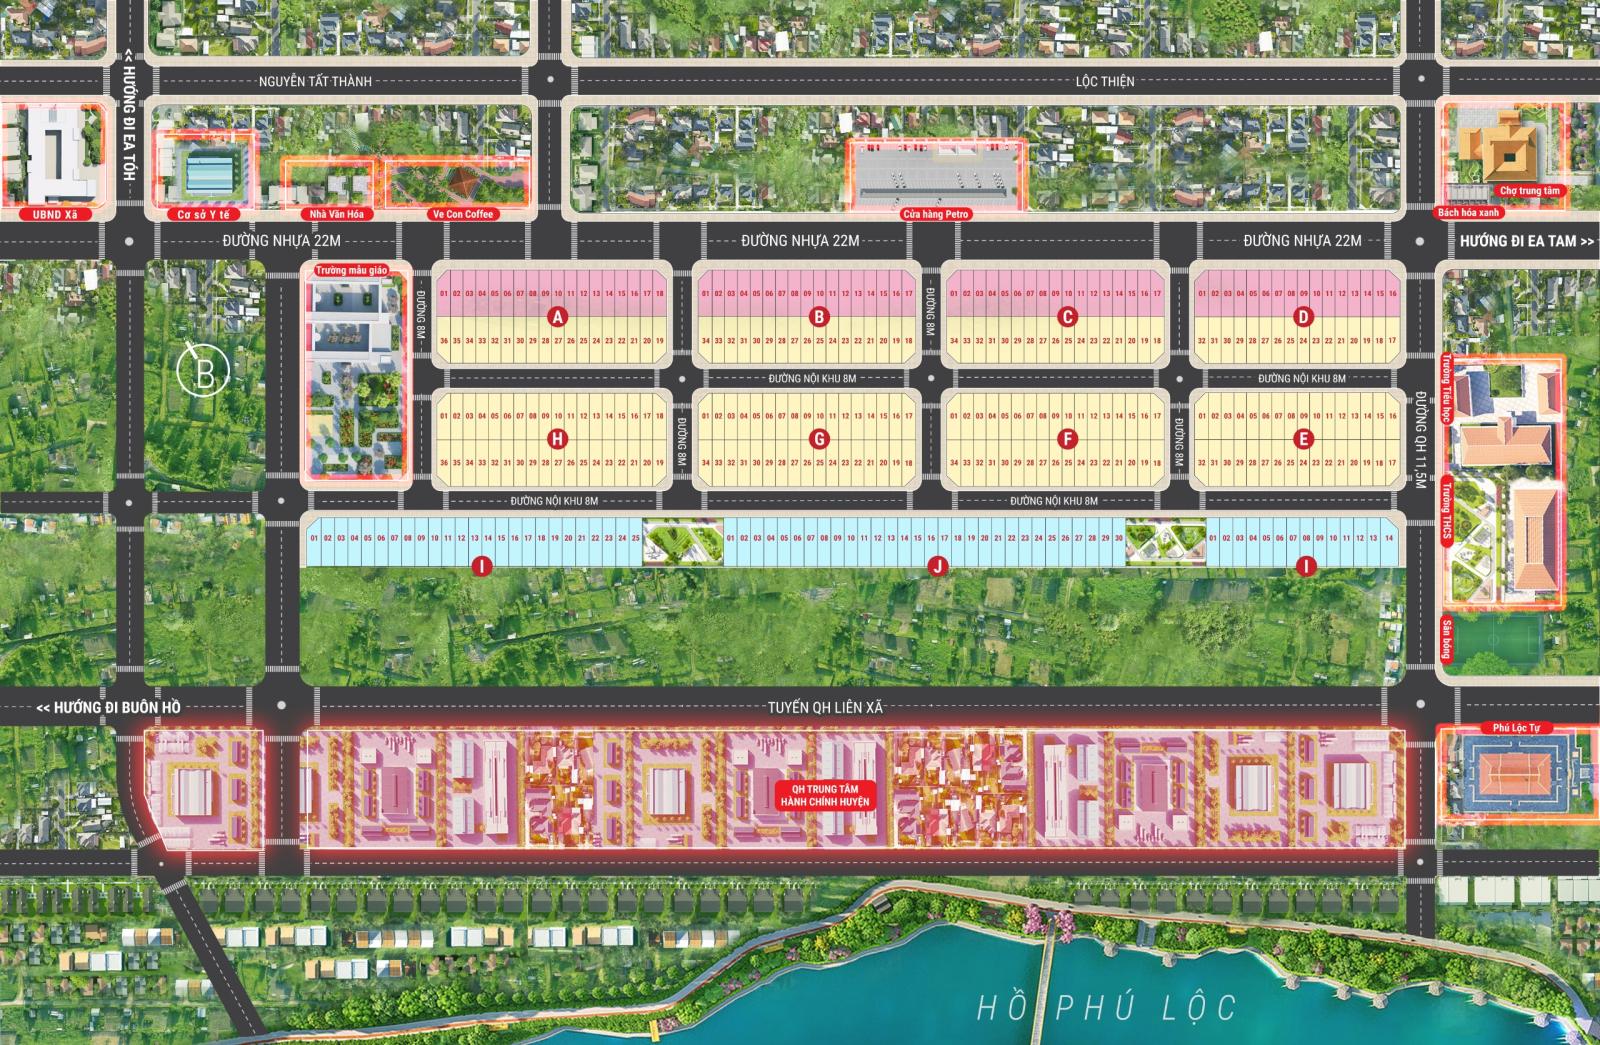 Quỹ đất nền sổ đỏ từng lô đang thu hút nhiều nhà đầu tư tại Krông Năng, Đắk Lắk 